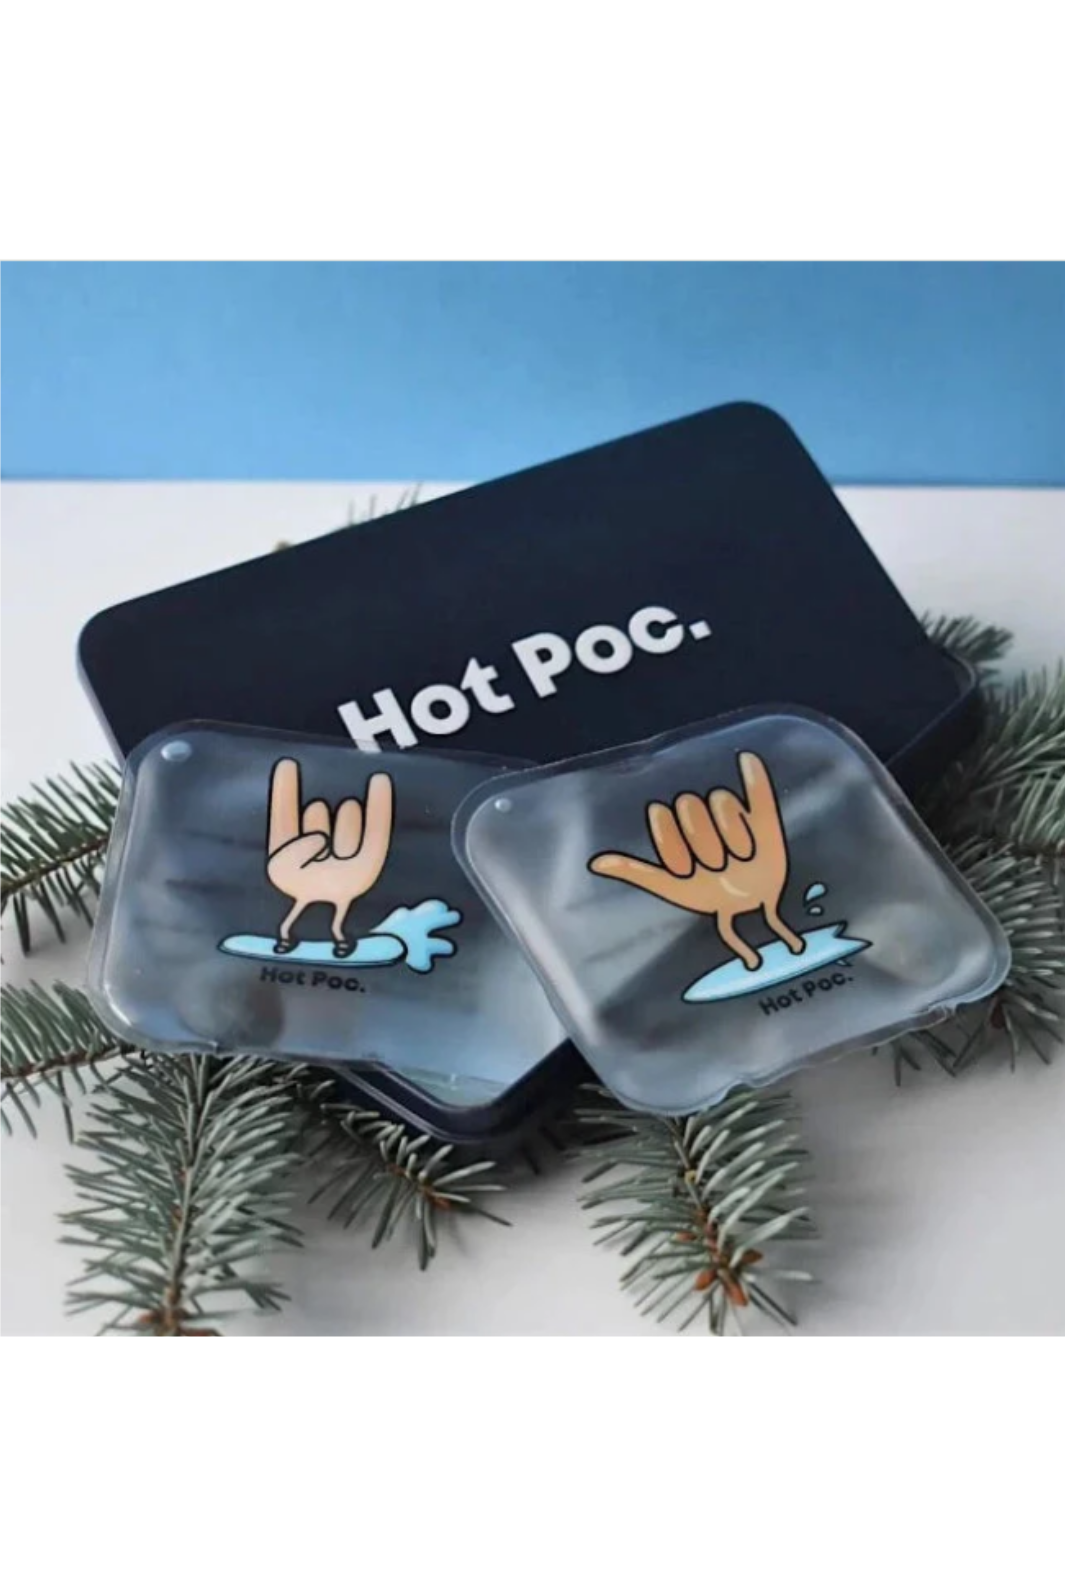 Hot Poc : une solution aux chauffe-mains jetables - La Presse+